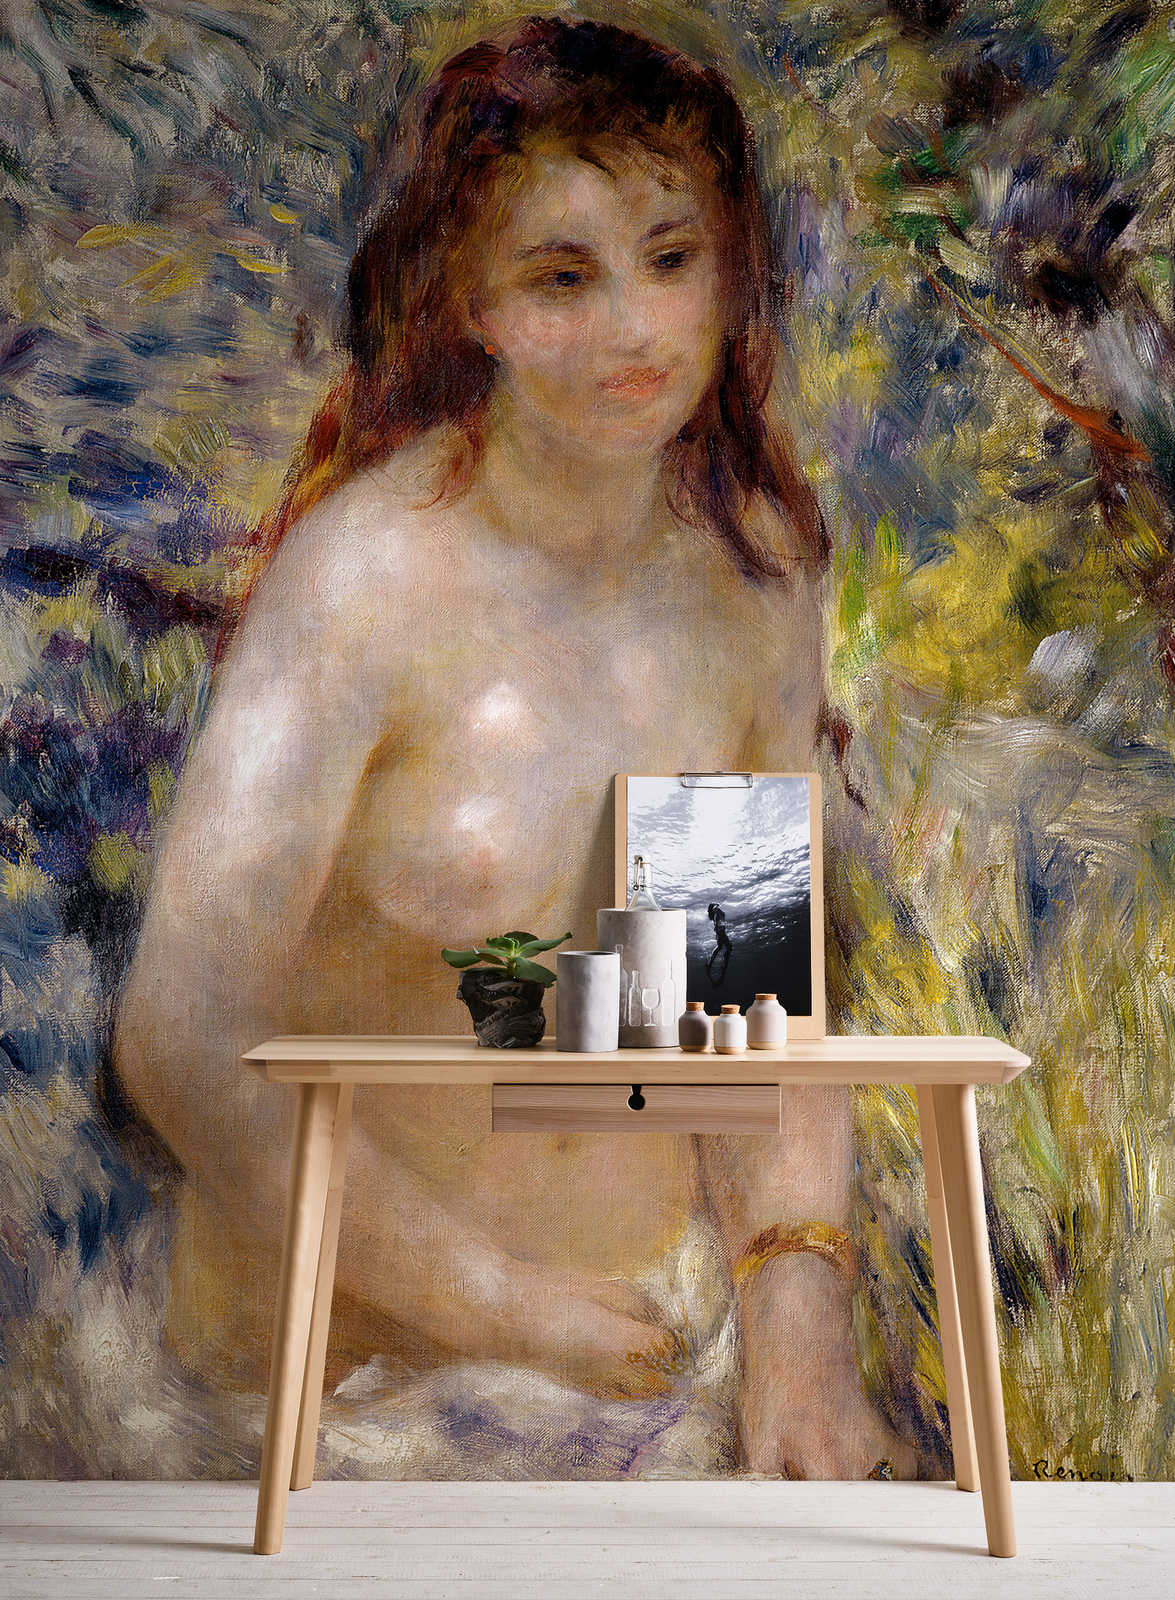             Fotomurali "Effetto della luce del sole" di Pierre Auguste Renoir
        